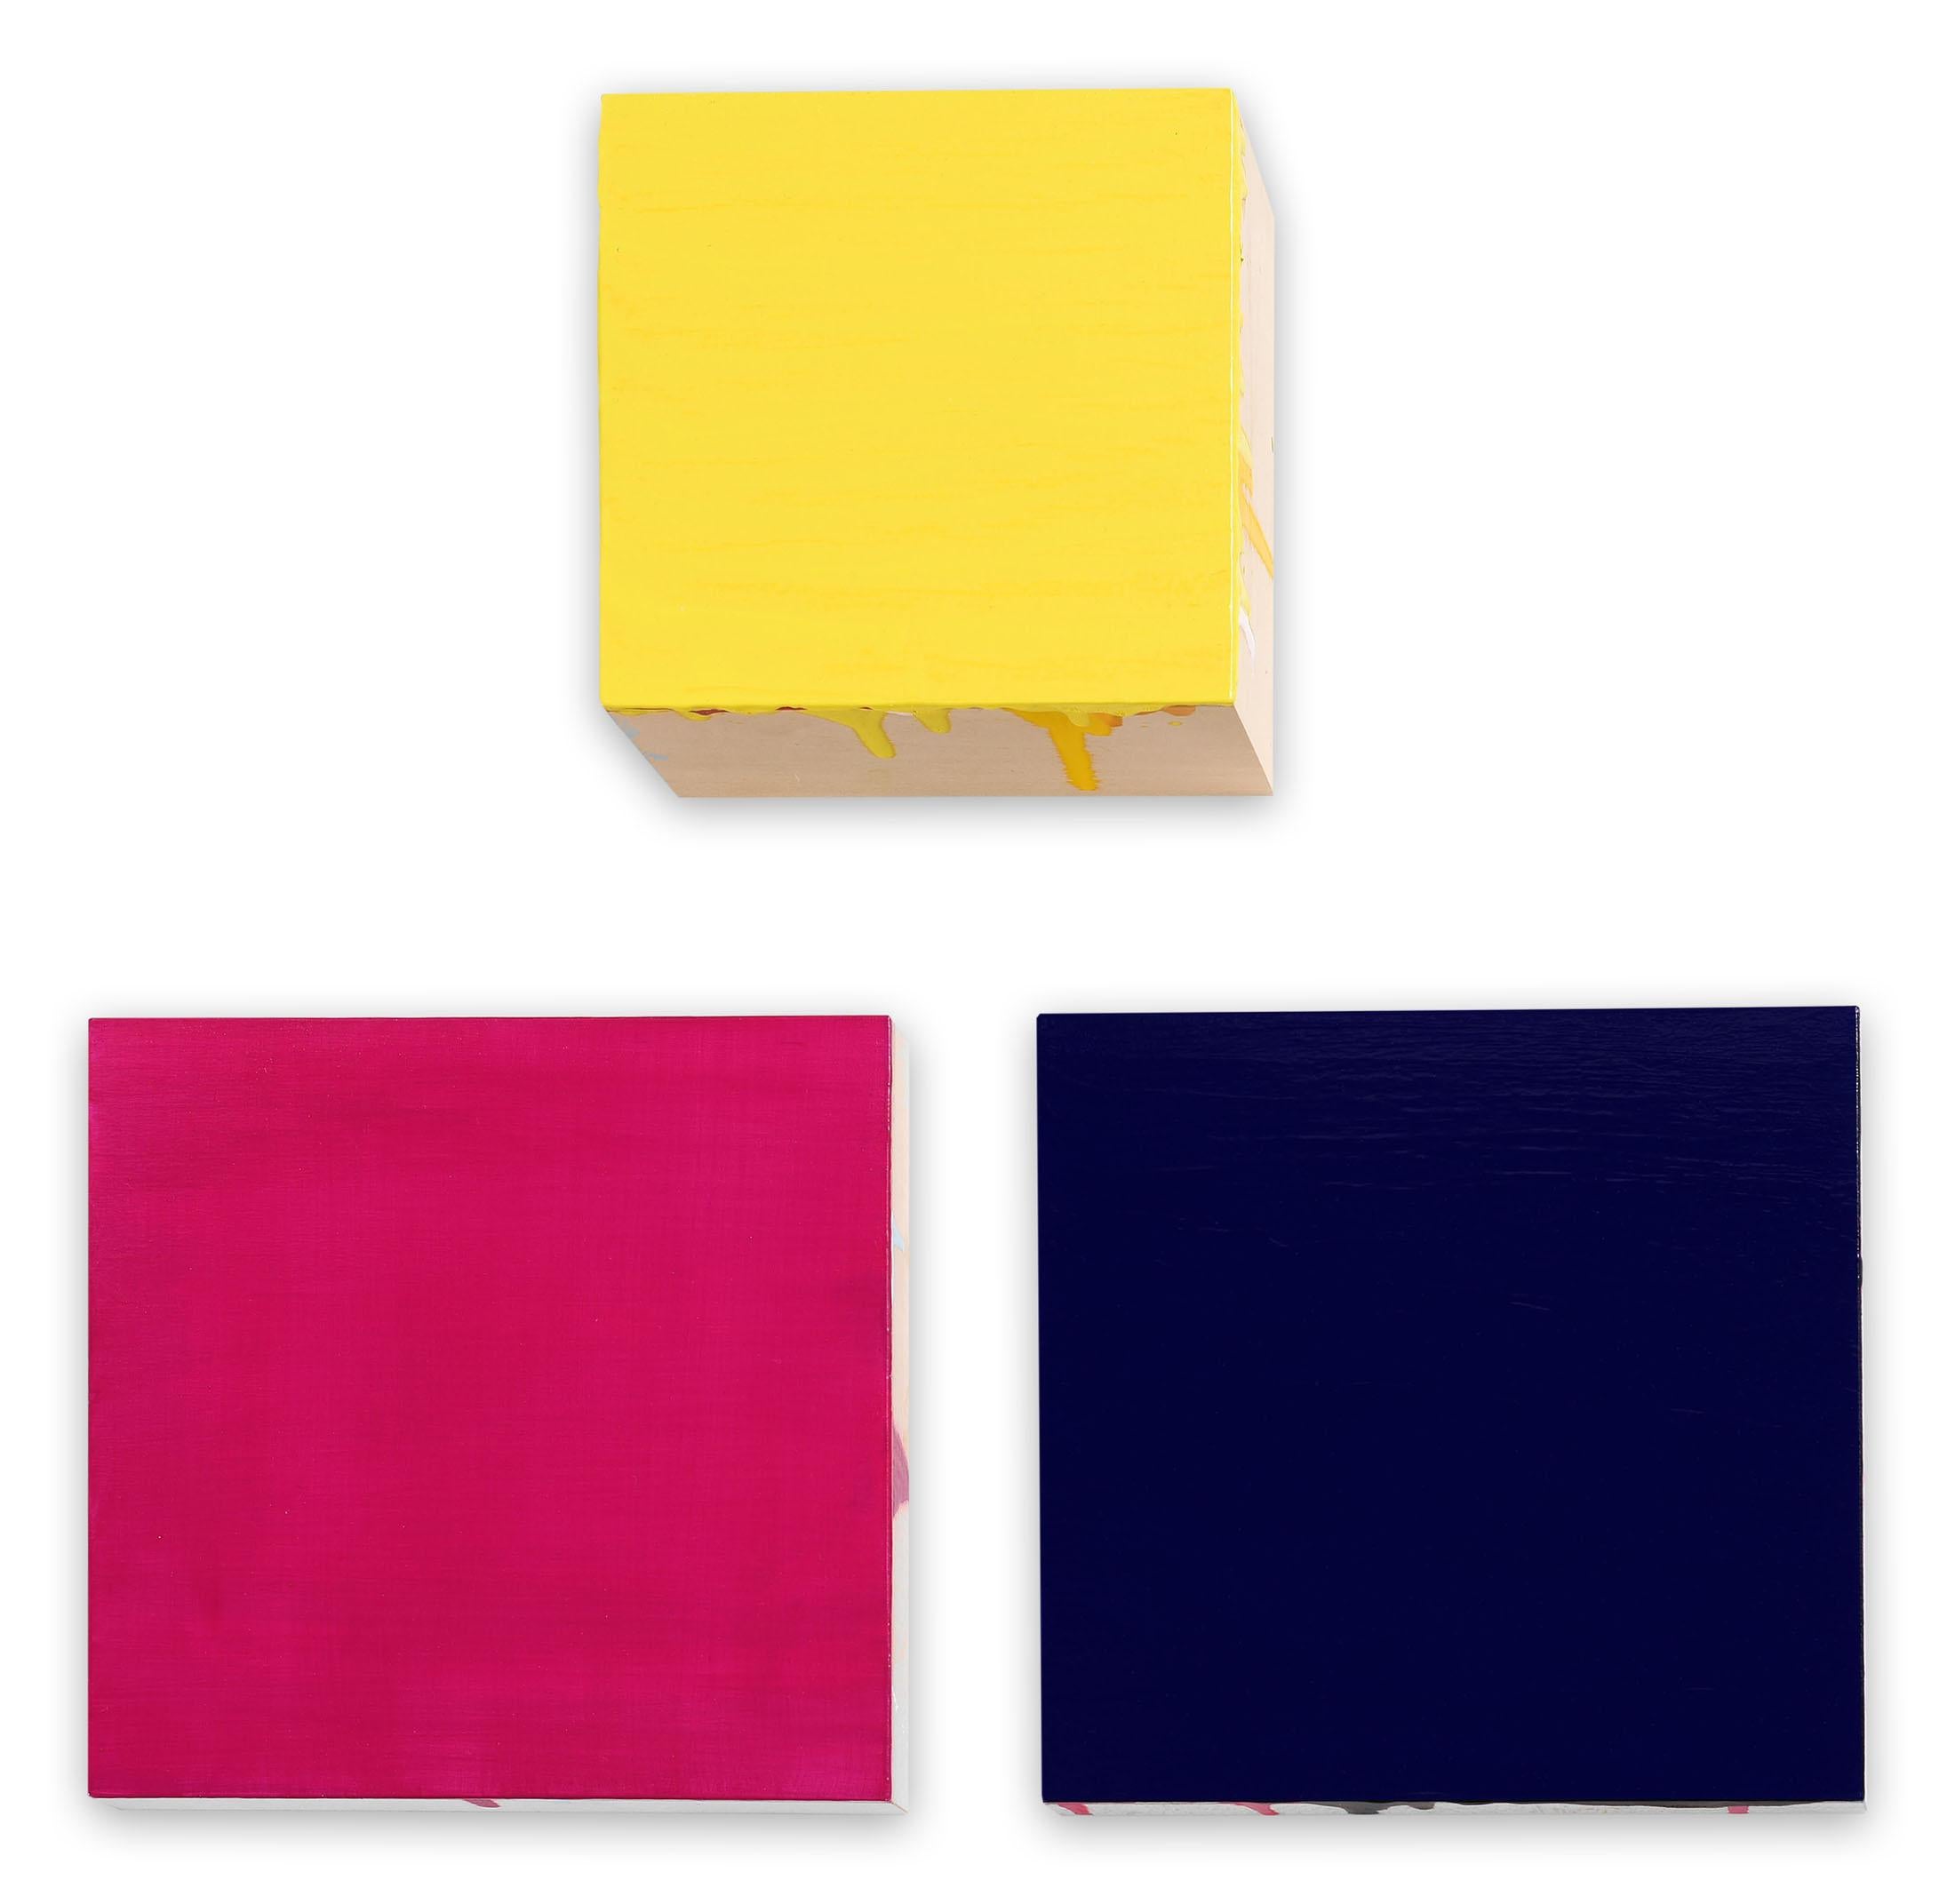 Abstract Painting Anya Spielman - Encre couleur crème miel et violette (peinture abstraite)